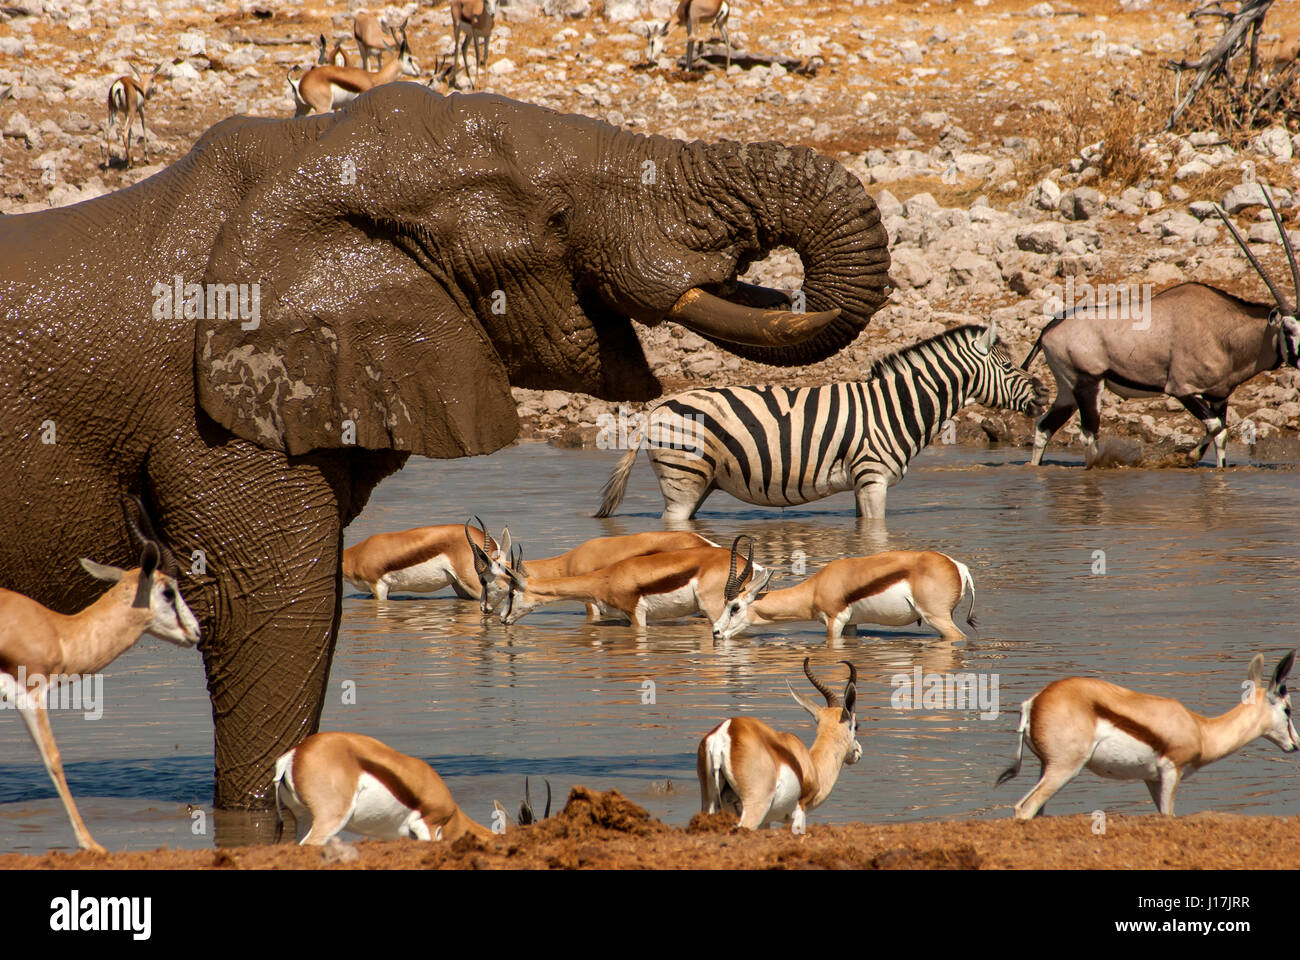 Elephant drinking at Okaukuejo waterhole with other animals in the background, Etosha National Park, Botswana Stock Photo